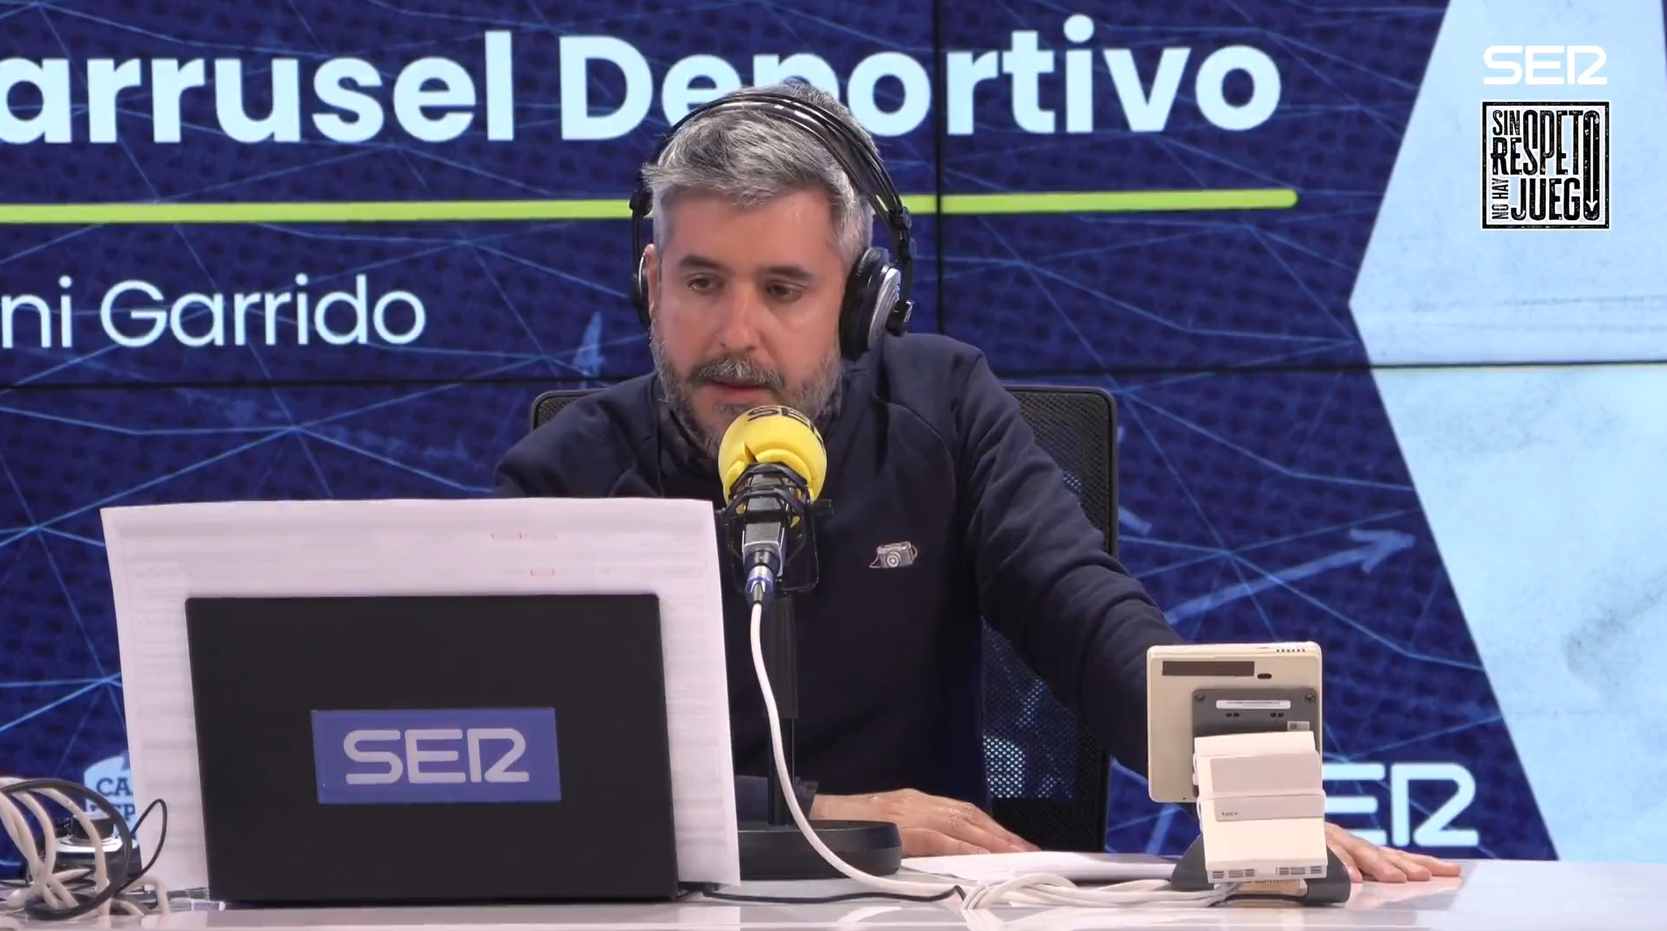 "Hoy, por primera vez, el morse no dirá gol, porque sin respeto no hay juego": Dani Garrido presenta la iniciativa 'Goles contra la intolerencia'